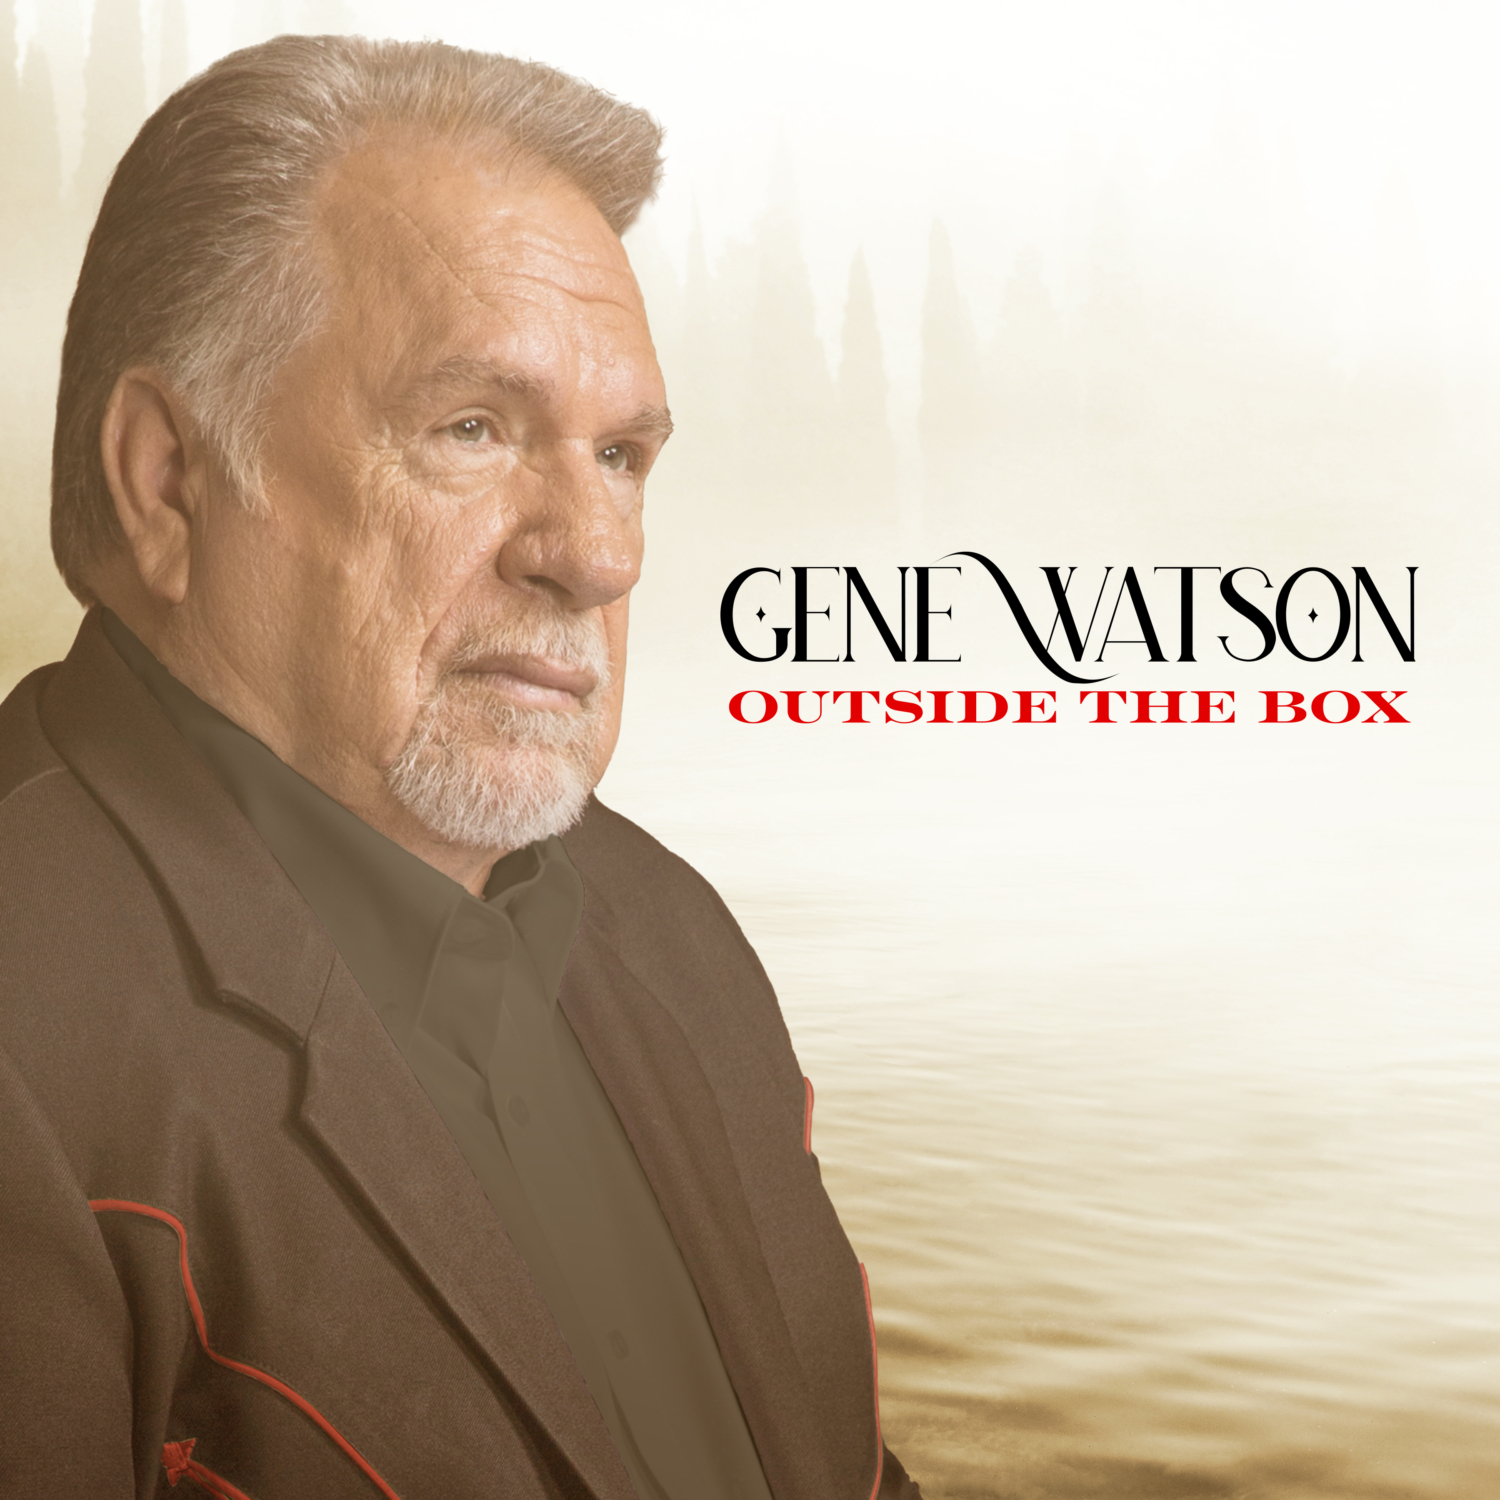 GENE WATSON ANNOUNCES NEW ALBUM OUTSIDE THE BOX Nashville Insider